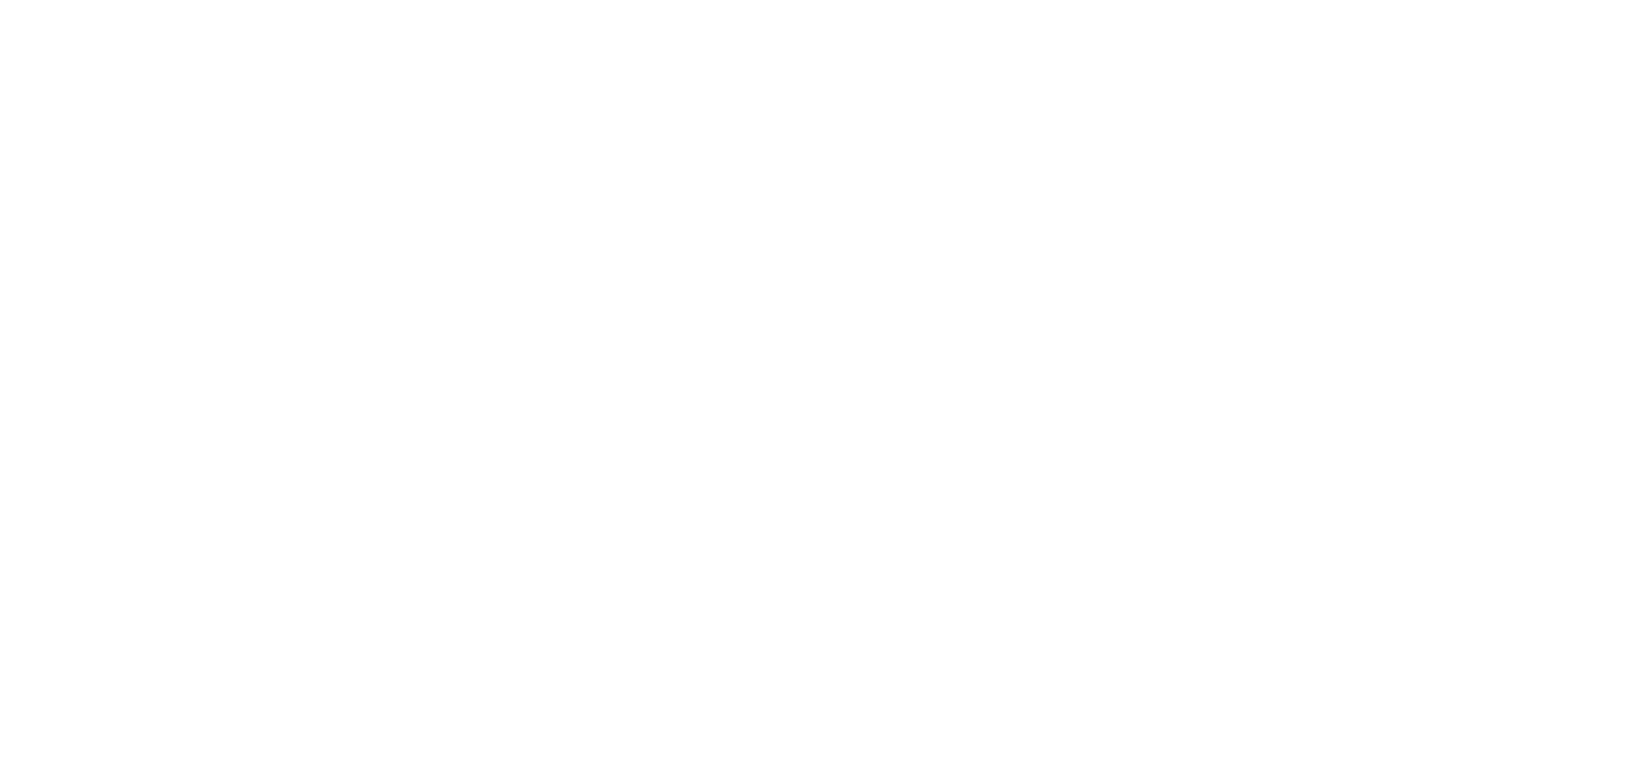 Ugo Virtual Logo white